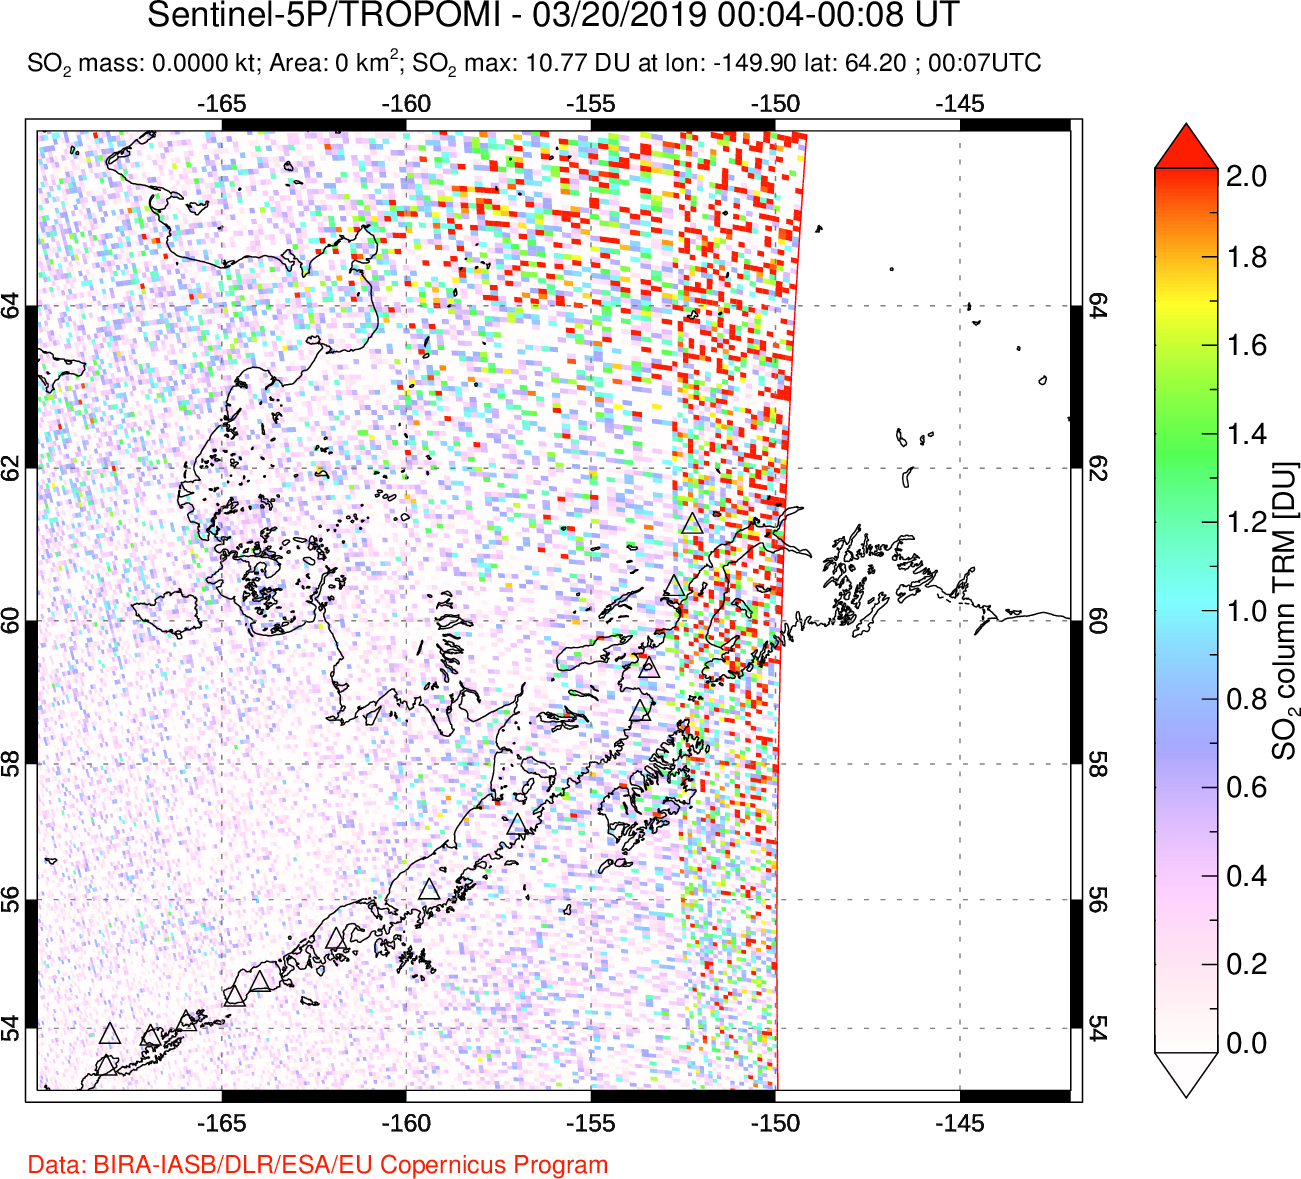 A sulfur dioxide image over Alaska, USA on Mar 20, 2019.